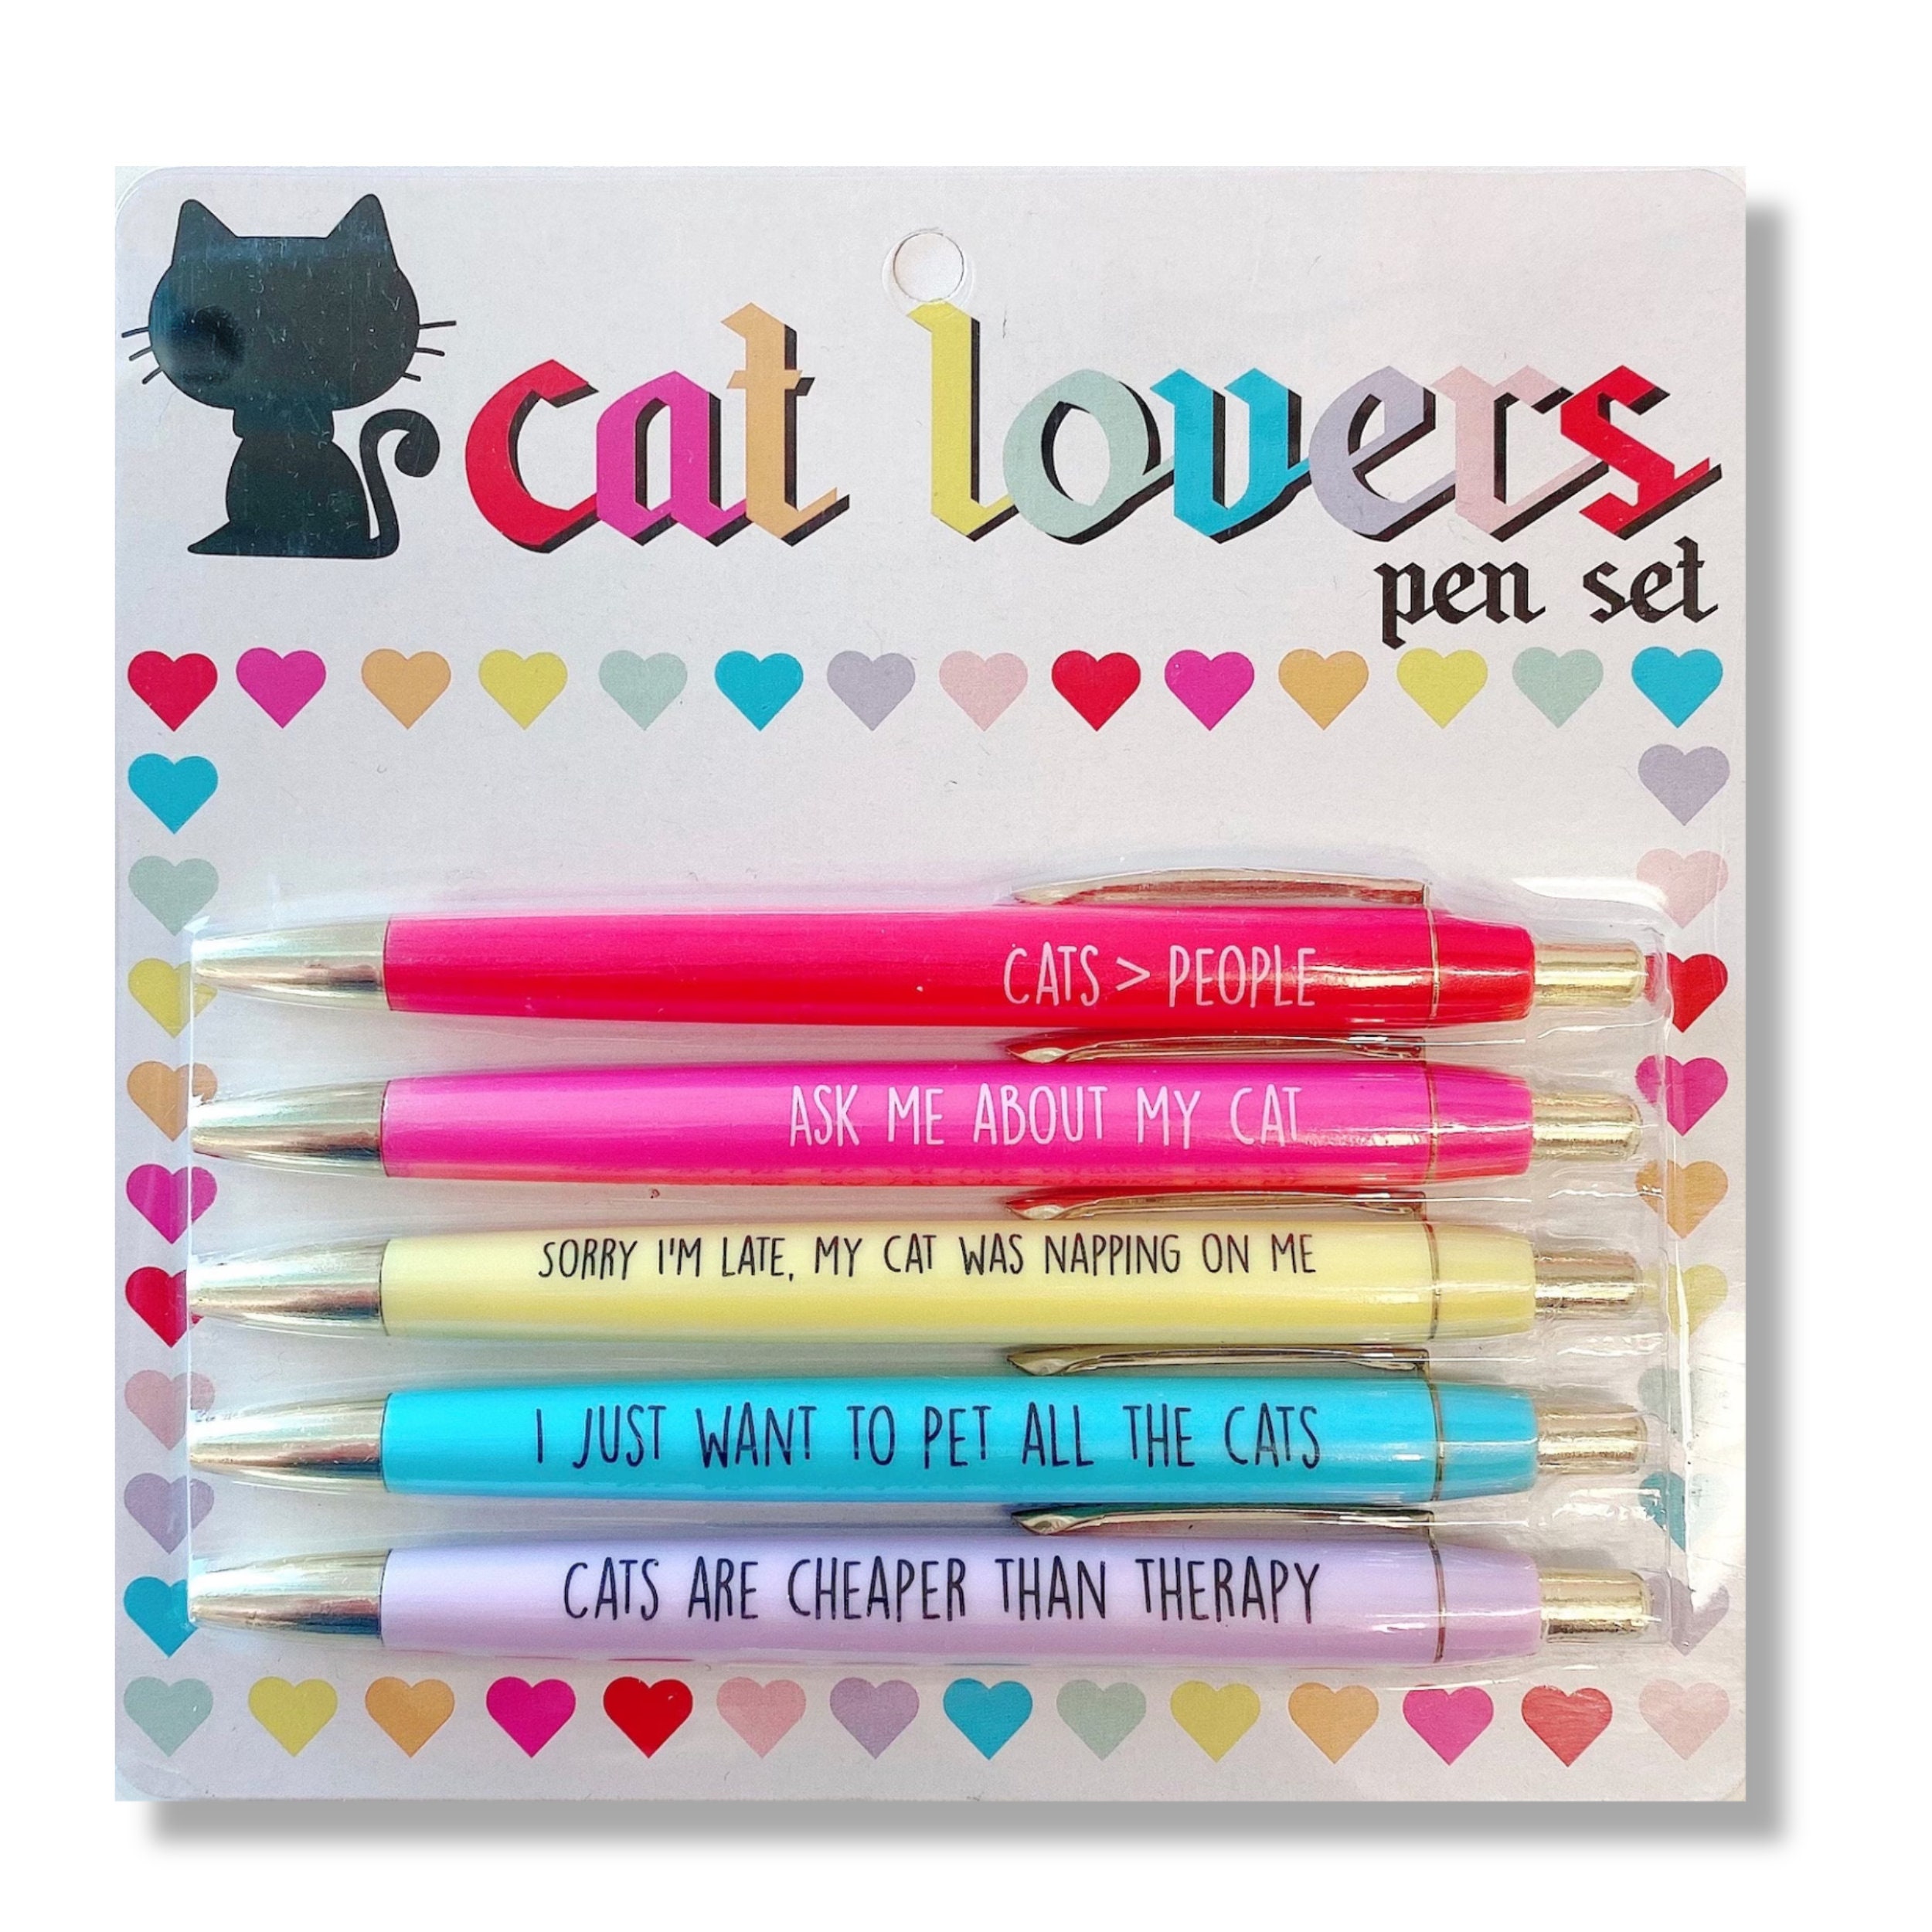 Stylos pour animaux de dessins animés, stylos à encre Fruit Cute Cartoon  Gel, papeterie de stylo drôle, stylos mignons pour garçons et filles,  adaptés